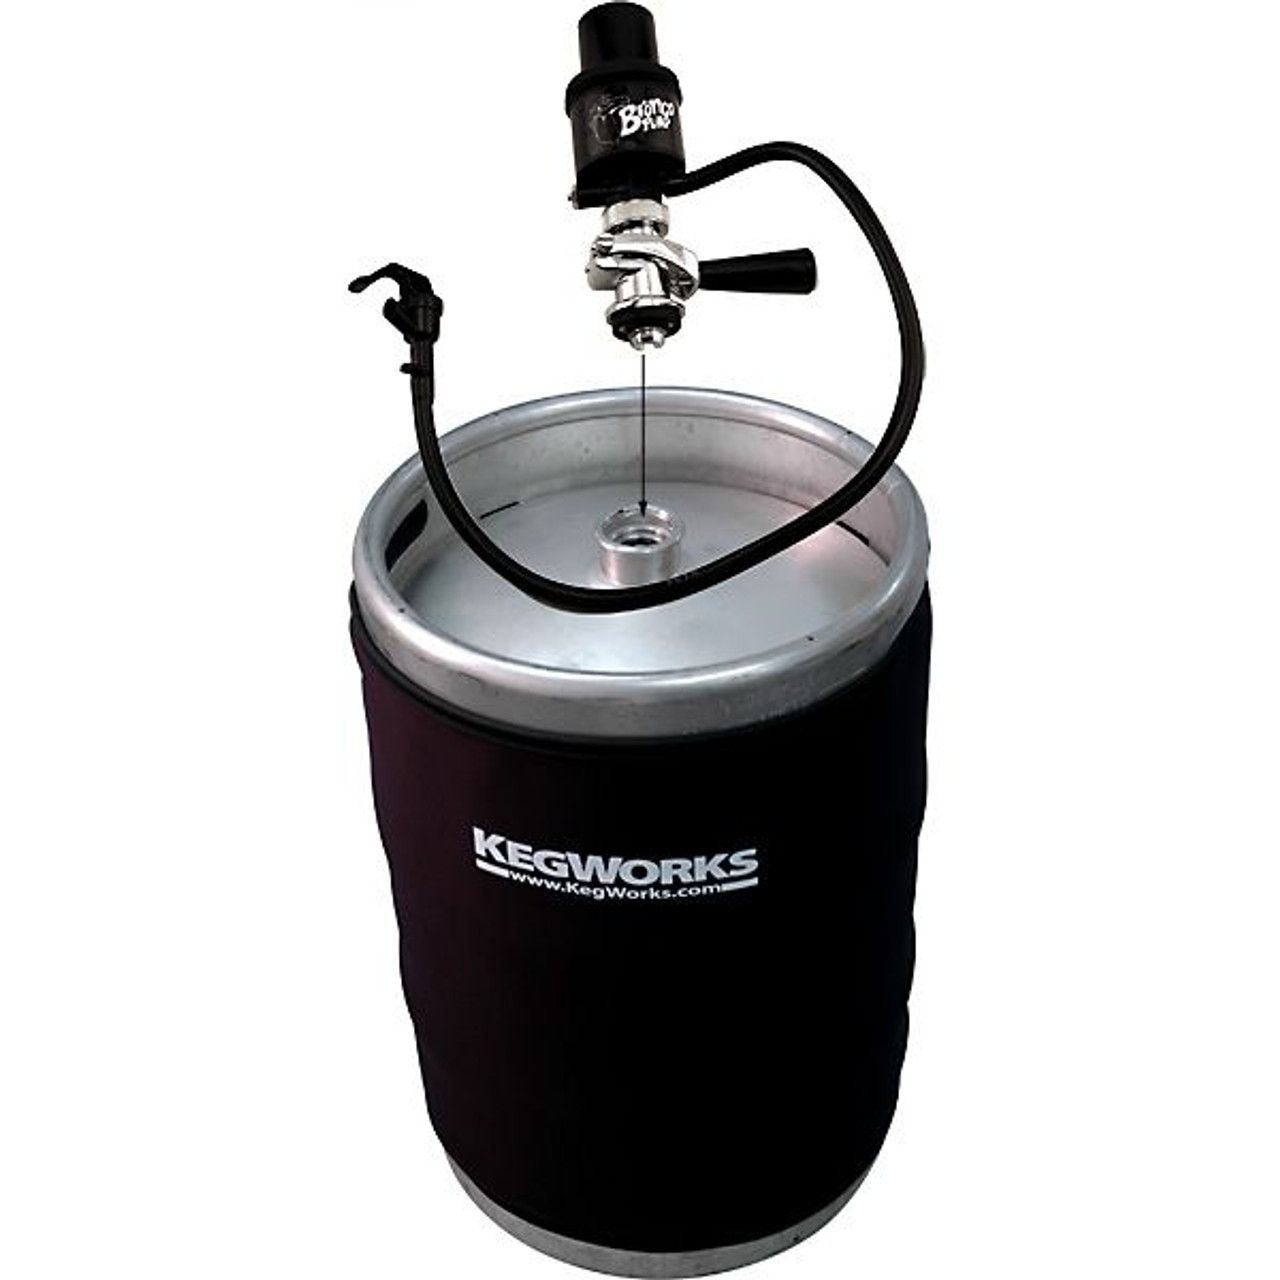 Super Cooler For Kegs of Beer - KegWorks